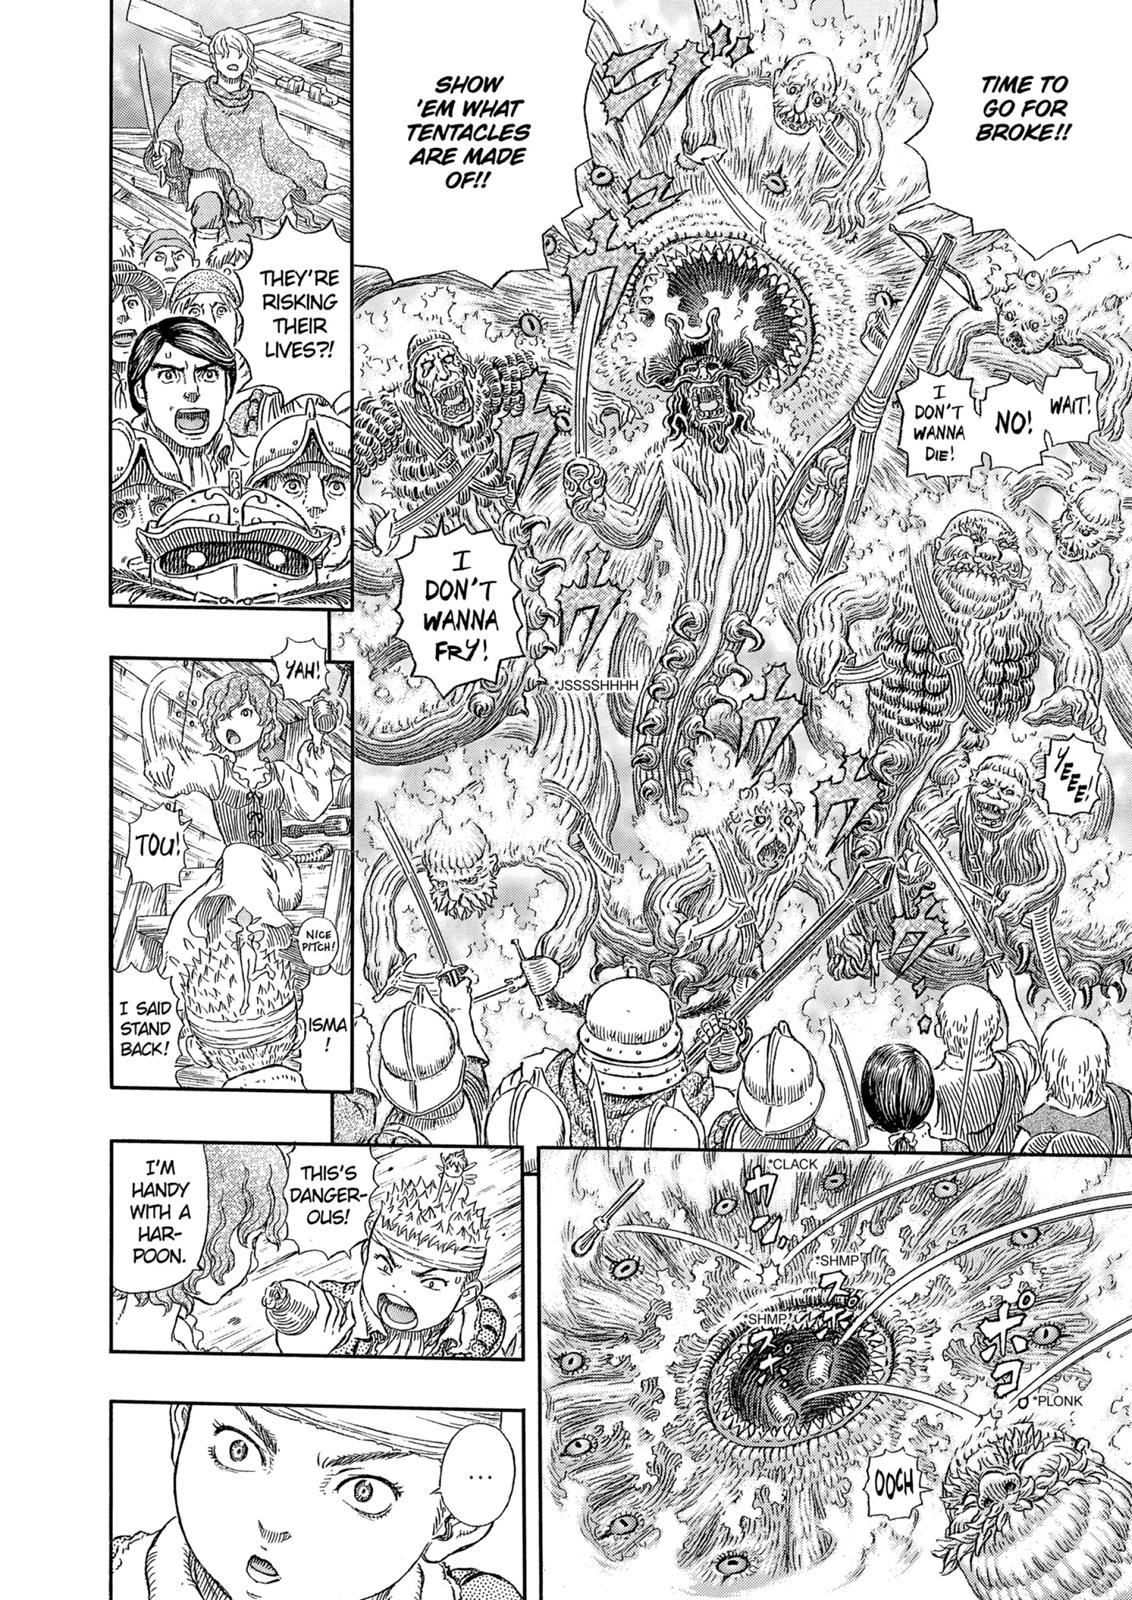 Berserk Manga Chapter 322 image 07